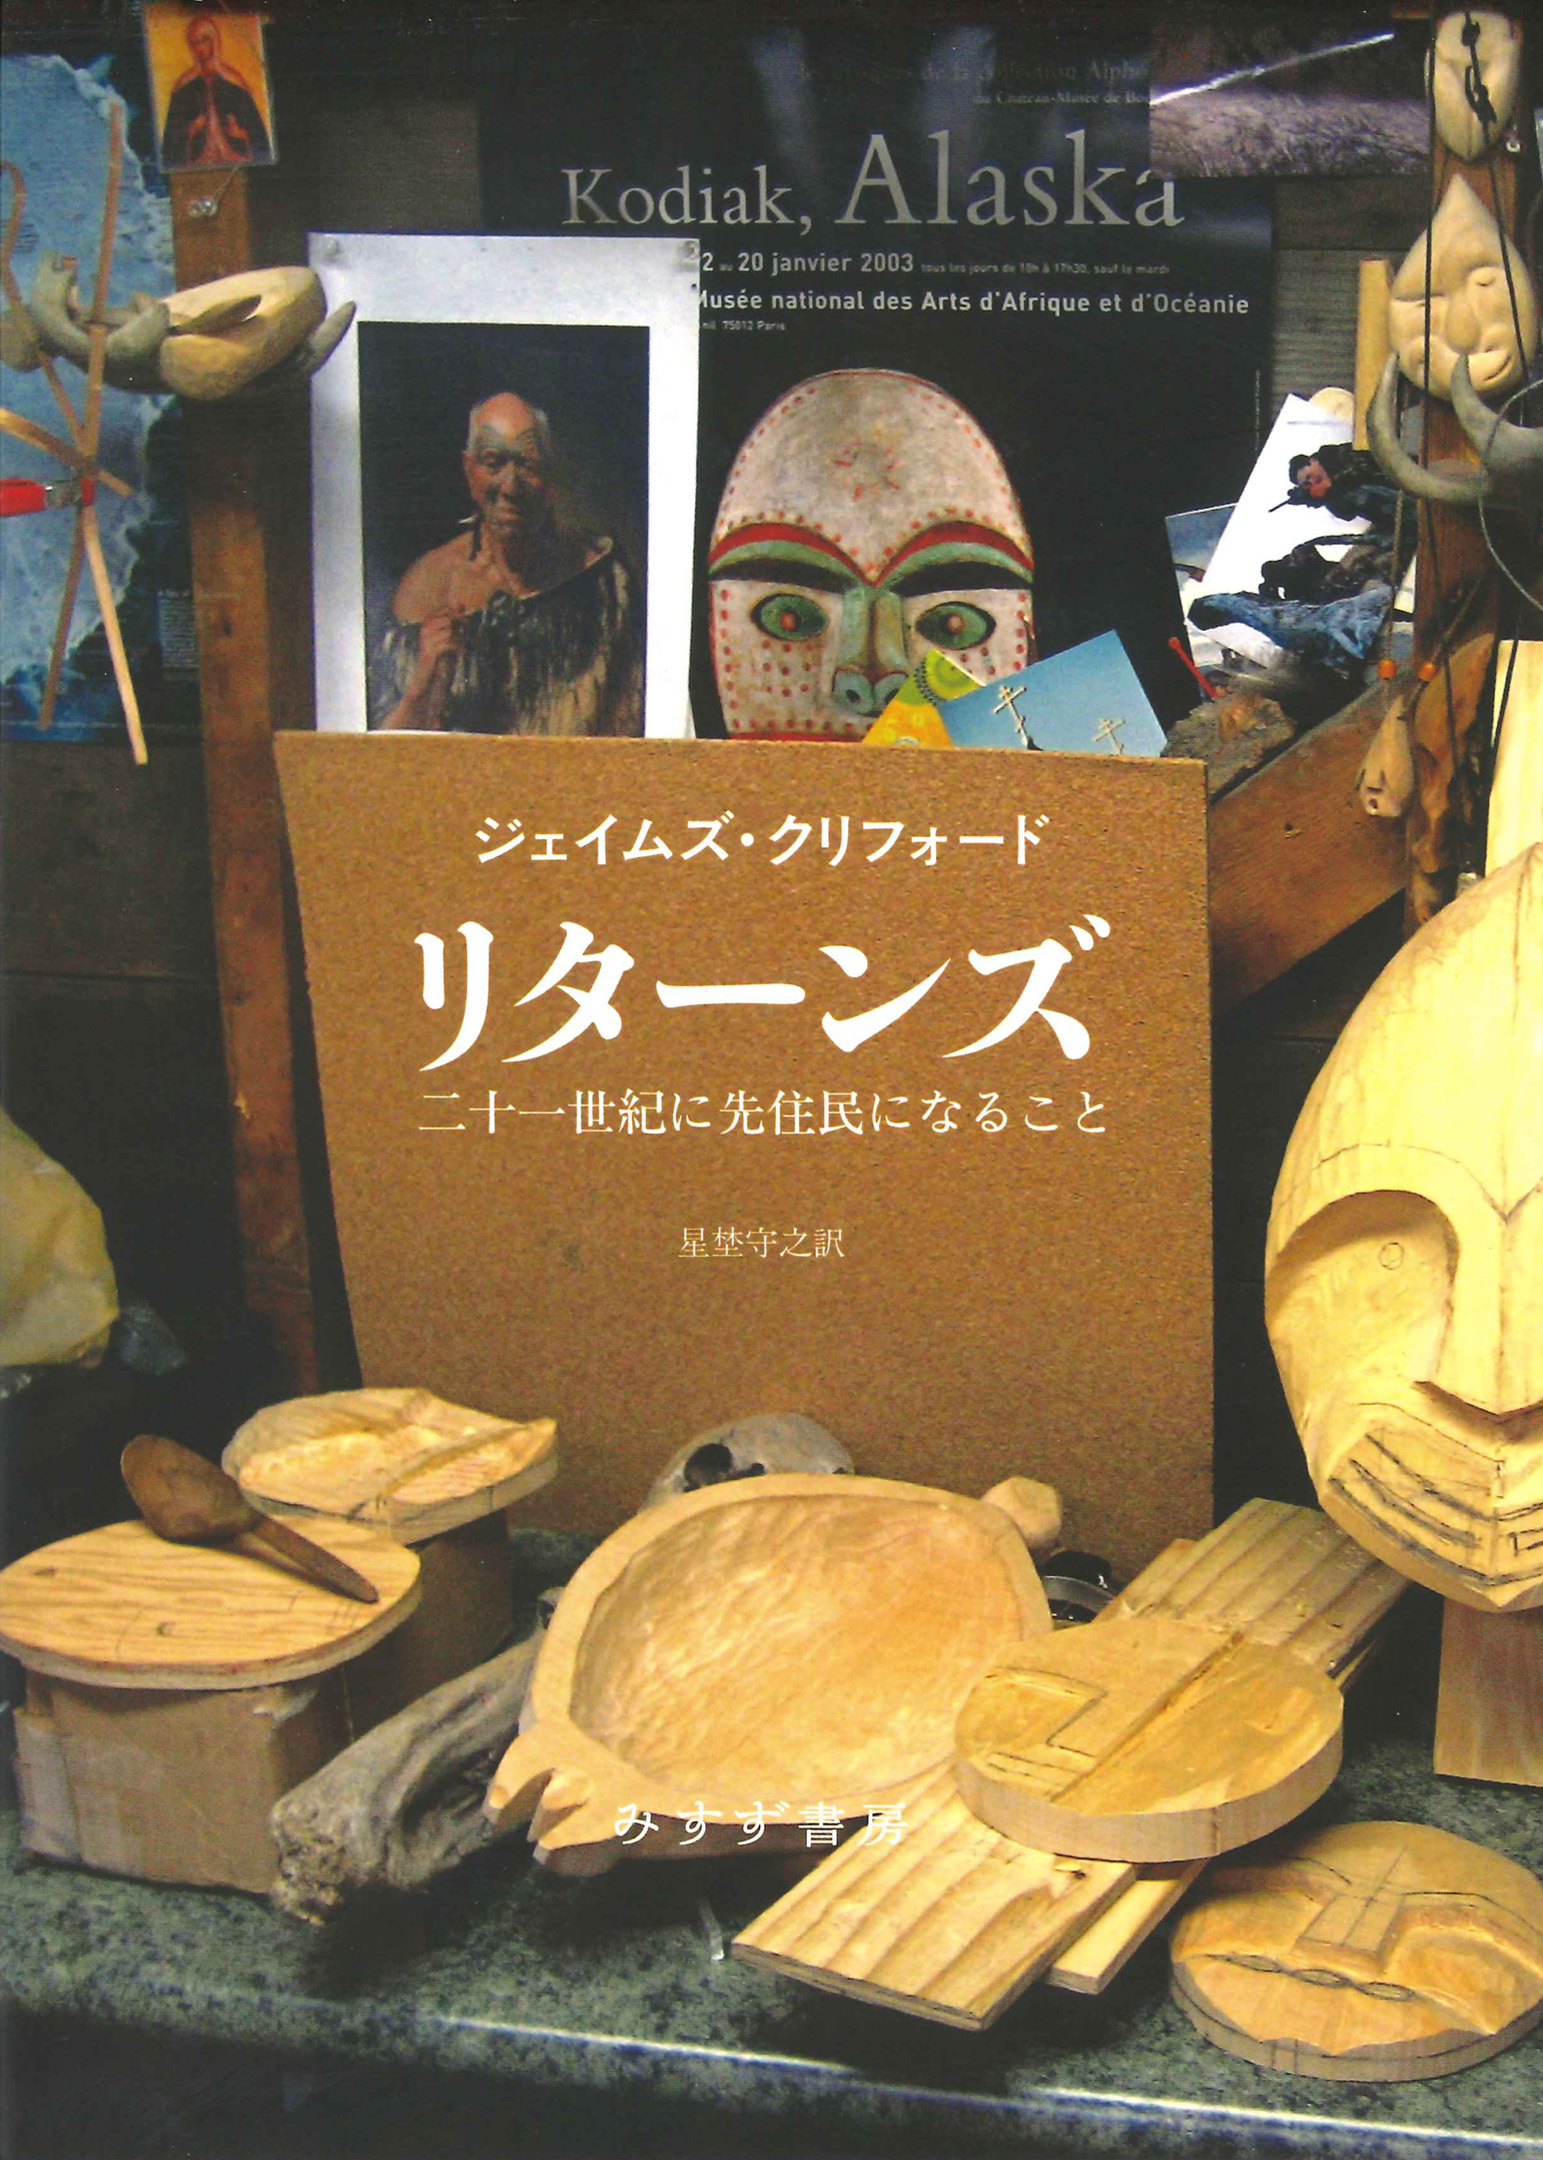 先住民の作りかけの木製の仮面が数点配置された机と、壁には仮面のポスターや先住民の写真などが飾られている様子を描いた絵